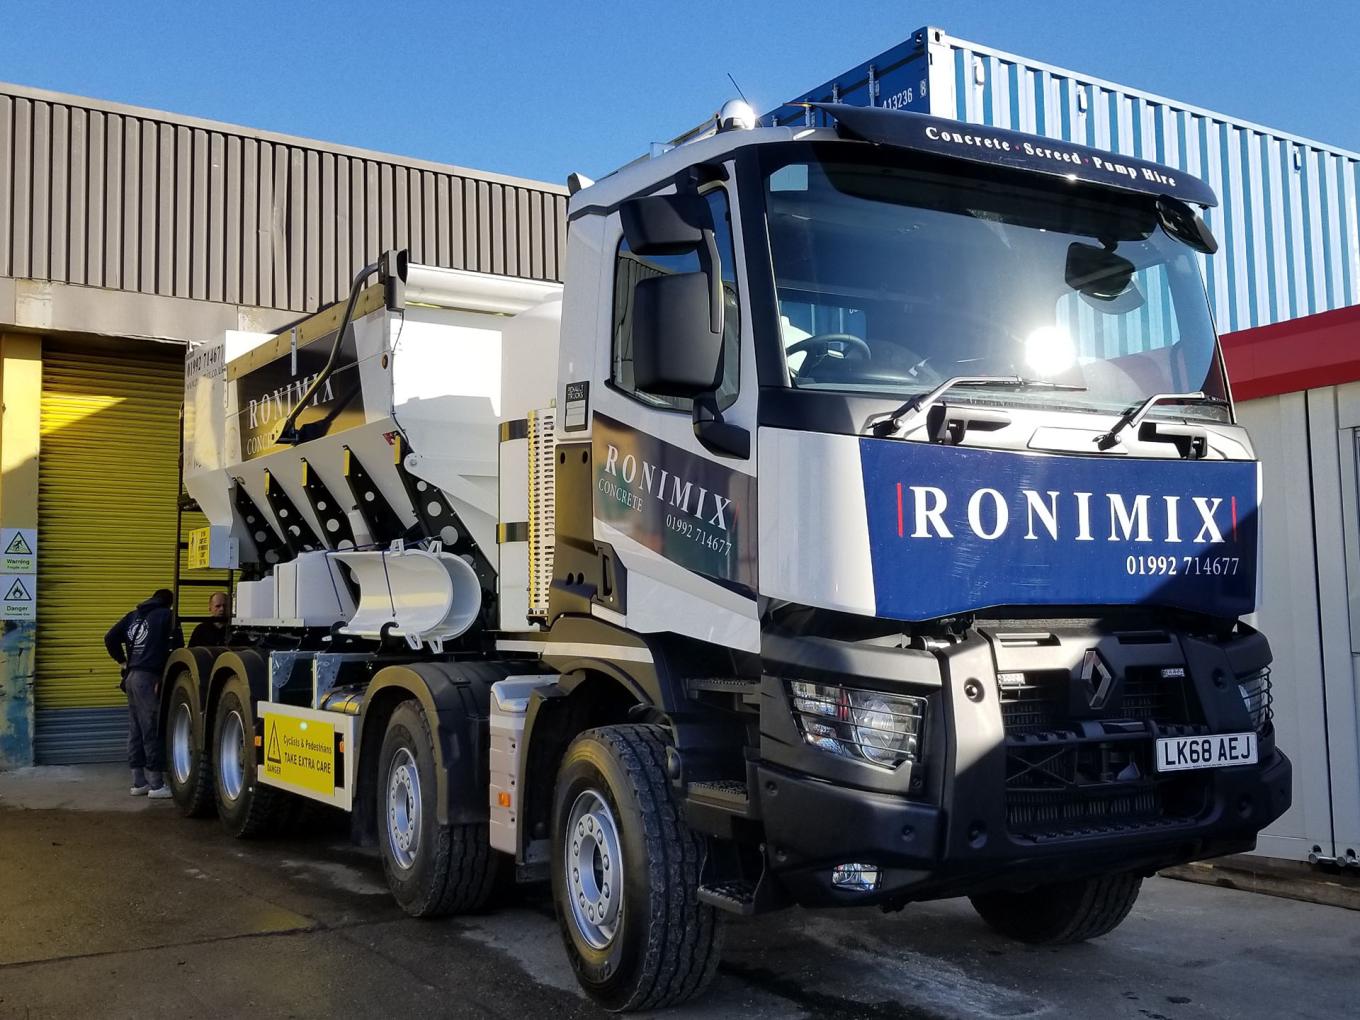 A Ronimix branded concrete pump truck